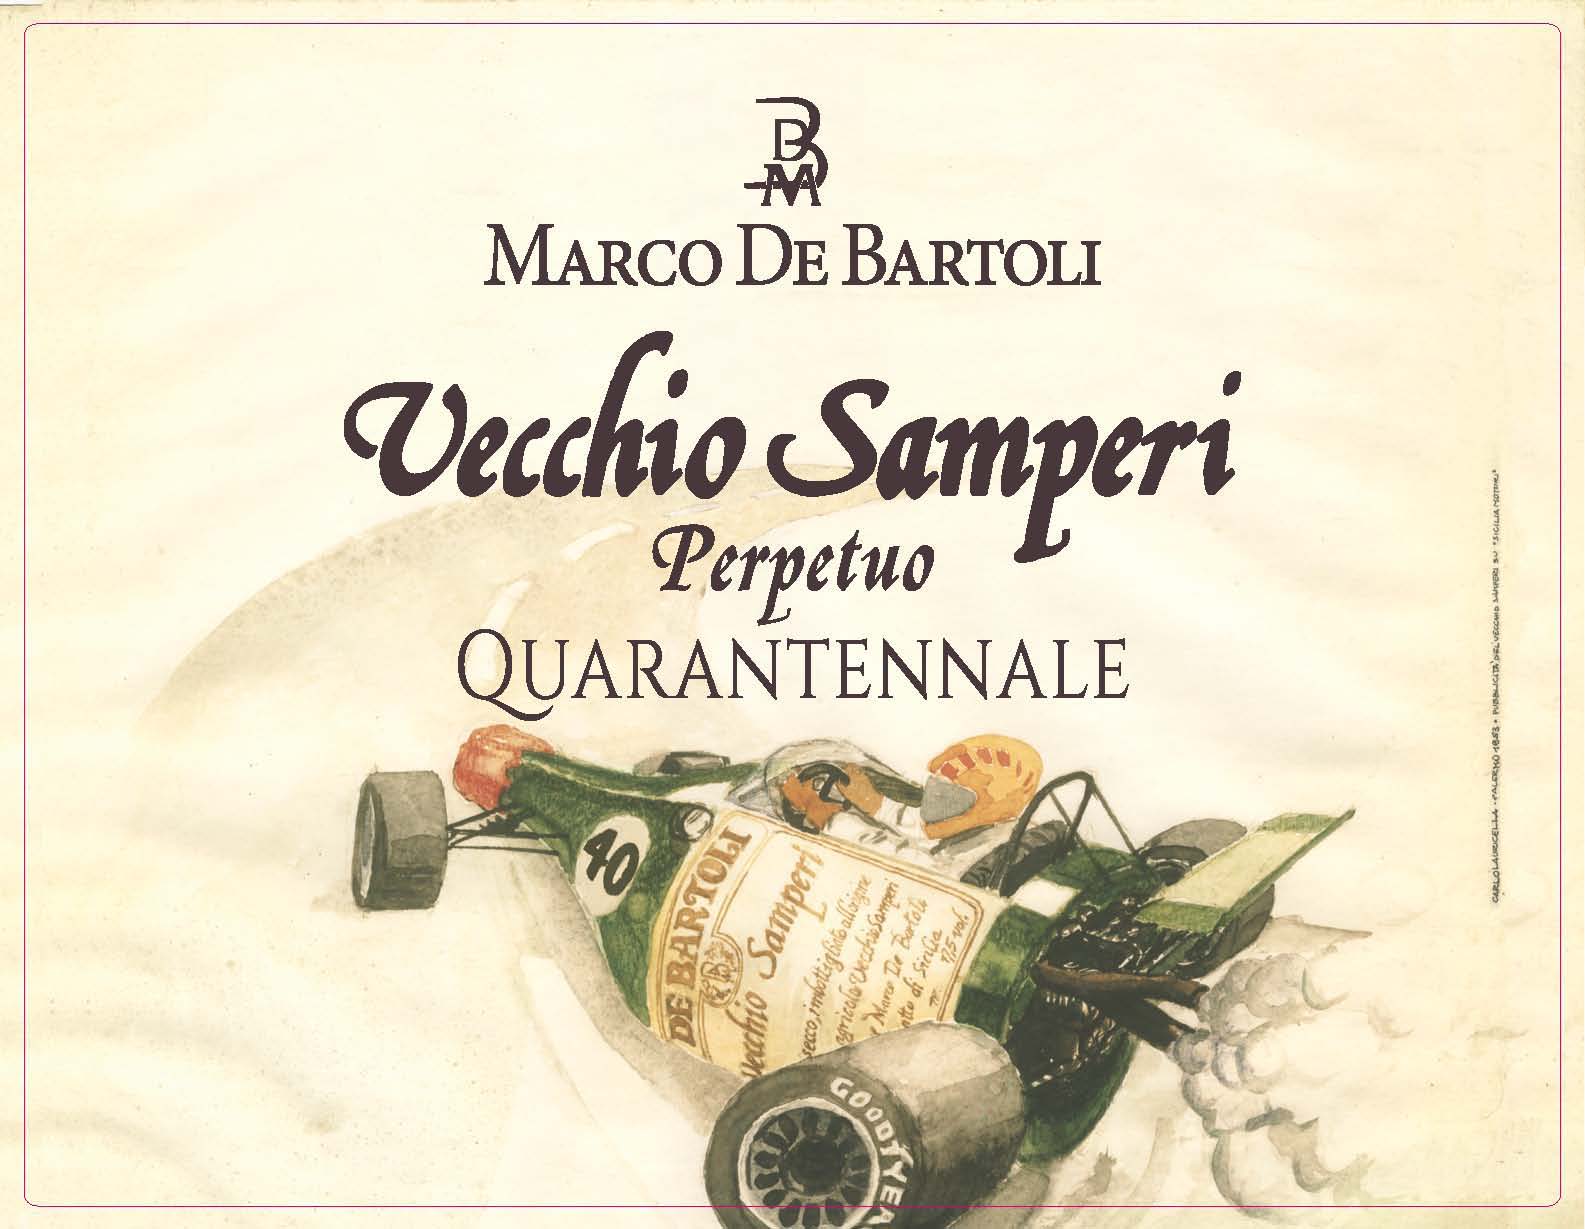 VVecchio Samperi Quarantennale Marco de Bartoli Fortified Wine in Wooden Box